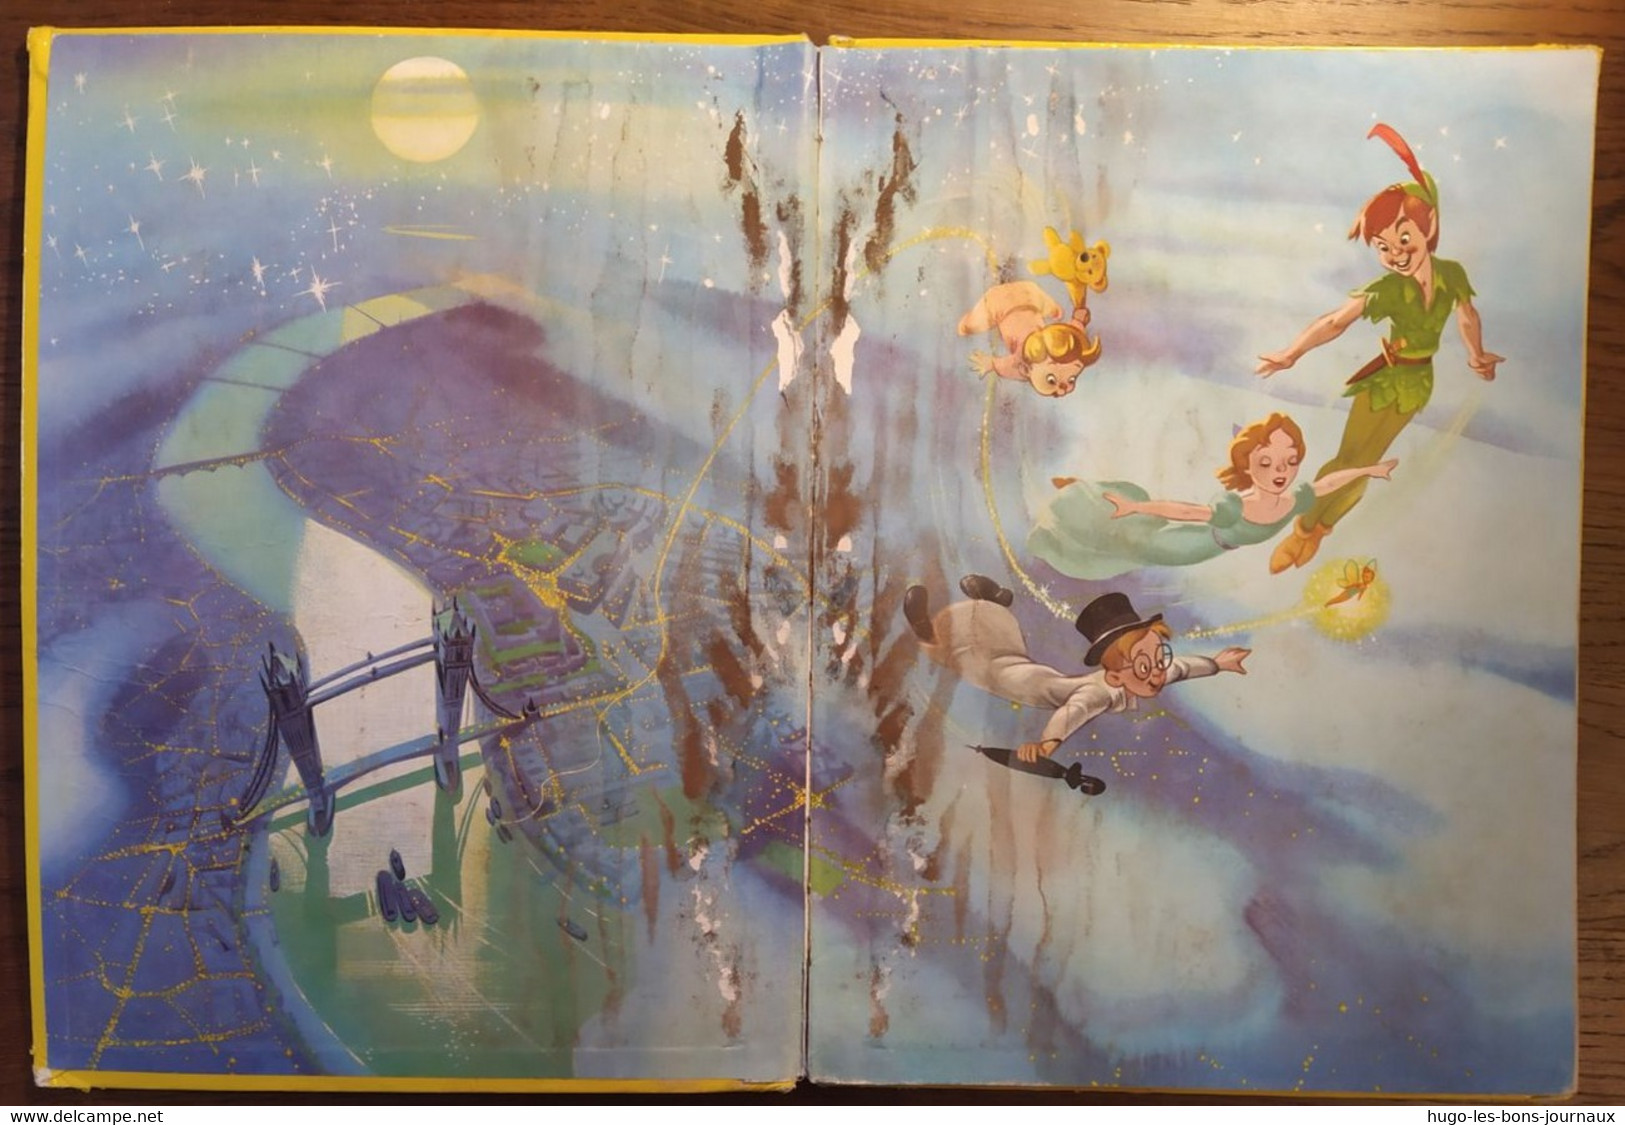 Peter Pan_Walt Disney_Grand Album Hachette_1965 - Peter Pan